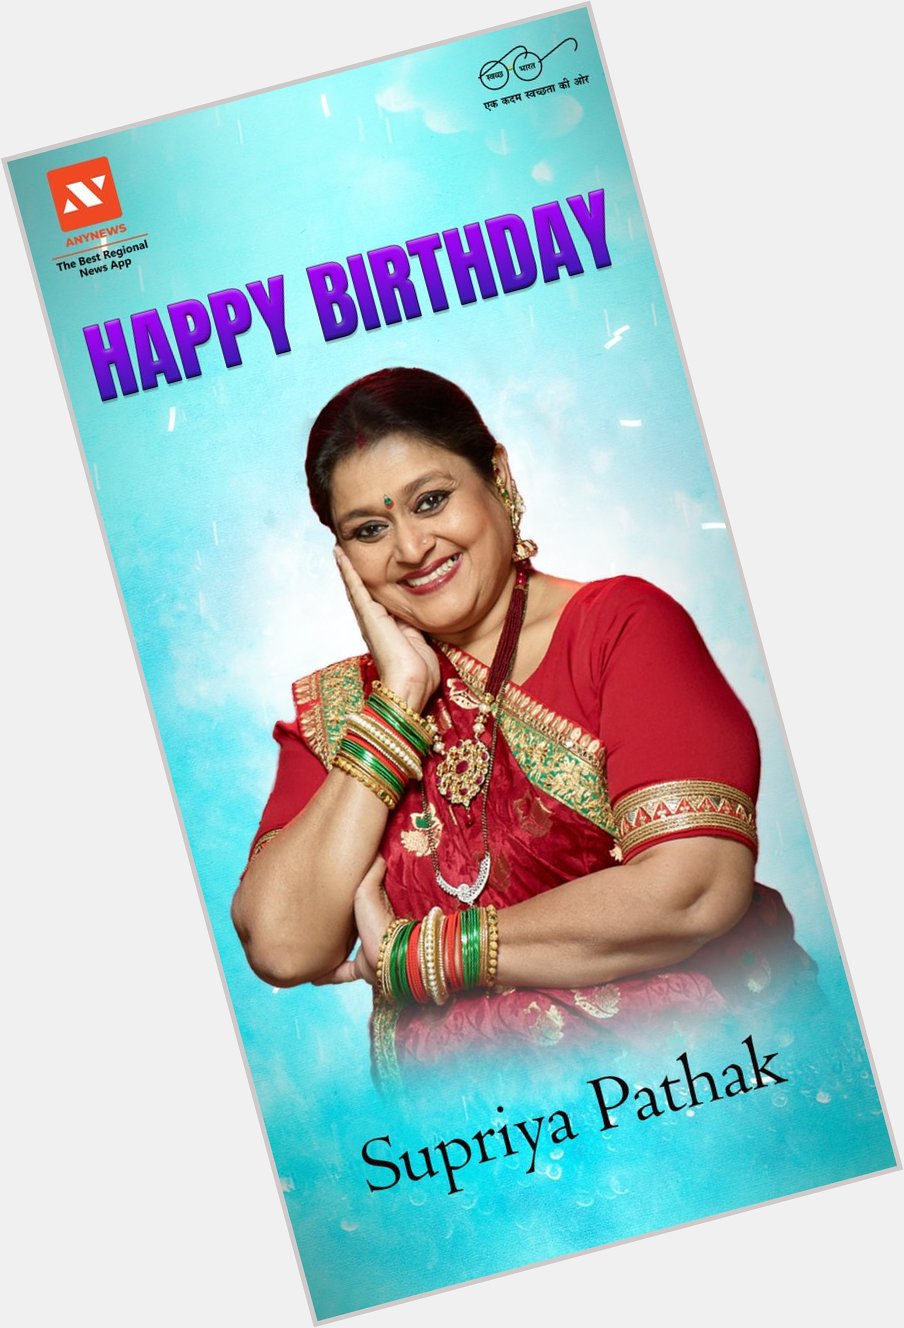 AnyNews wishes Supriya Pathak Happy Birthday.    